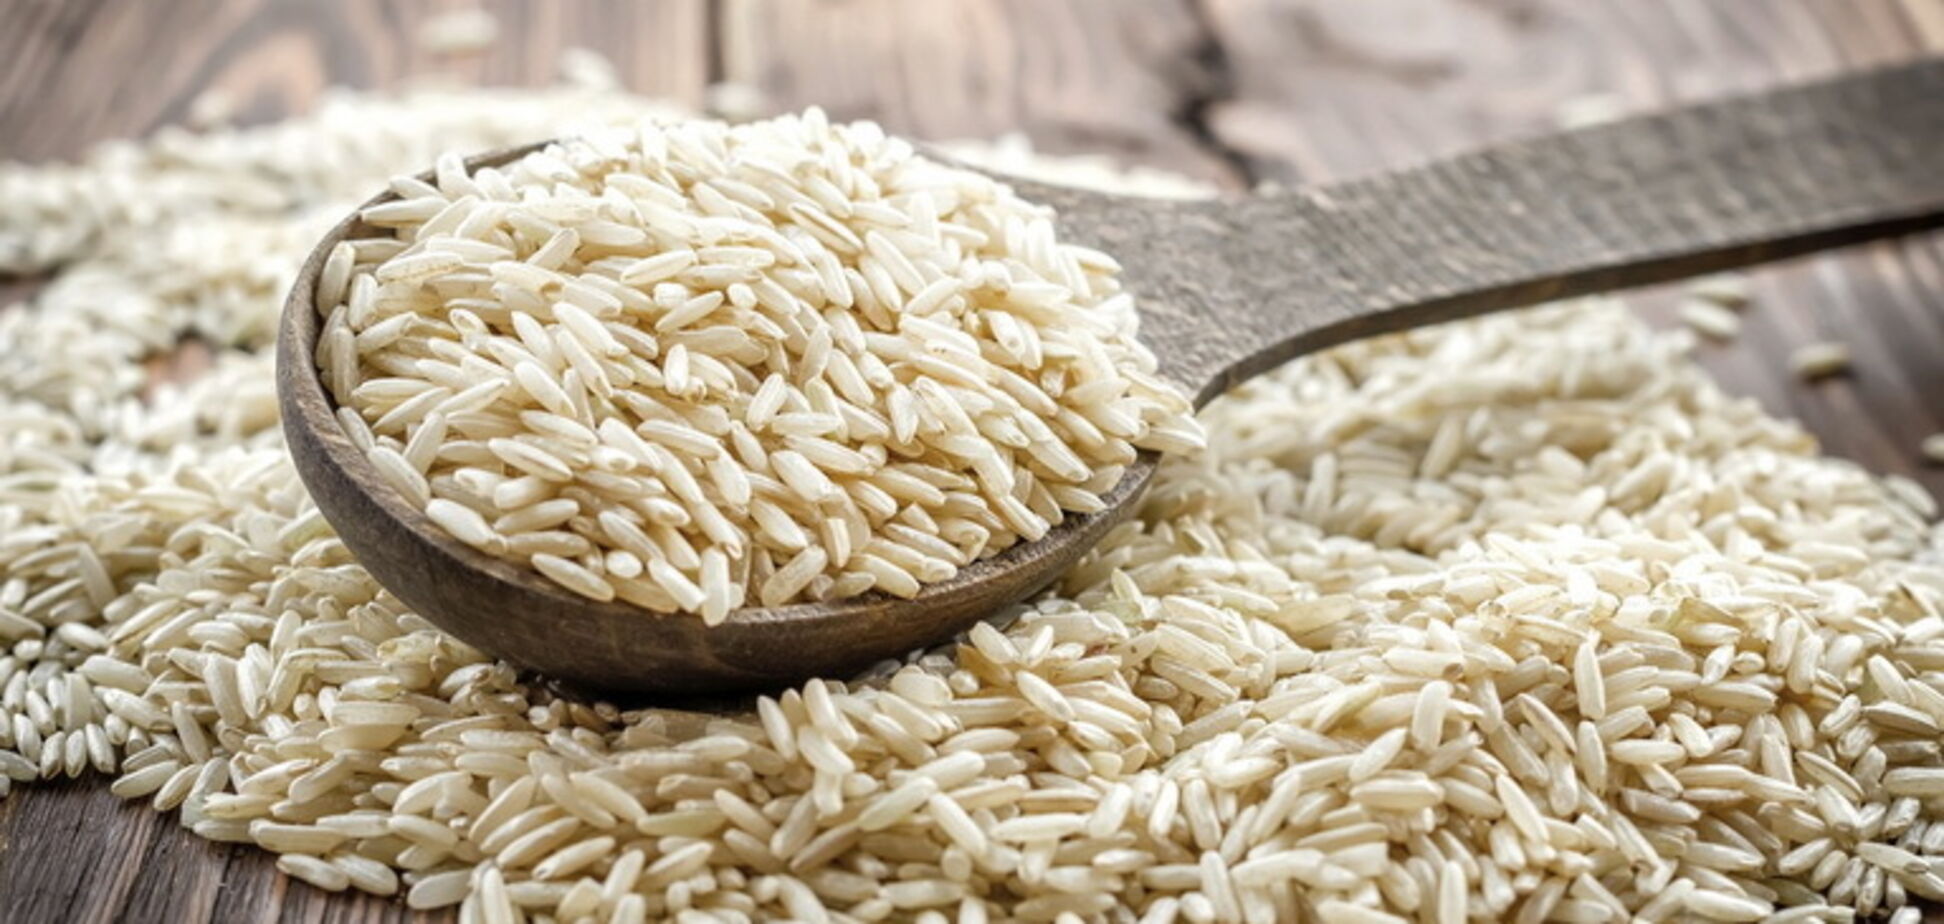  Накапливает мышьяк и токсины: выяснилась смертельная опасность риса